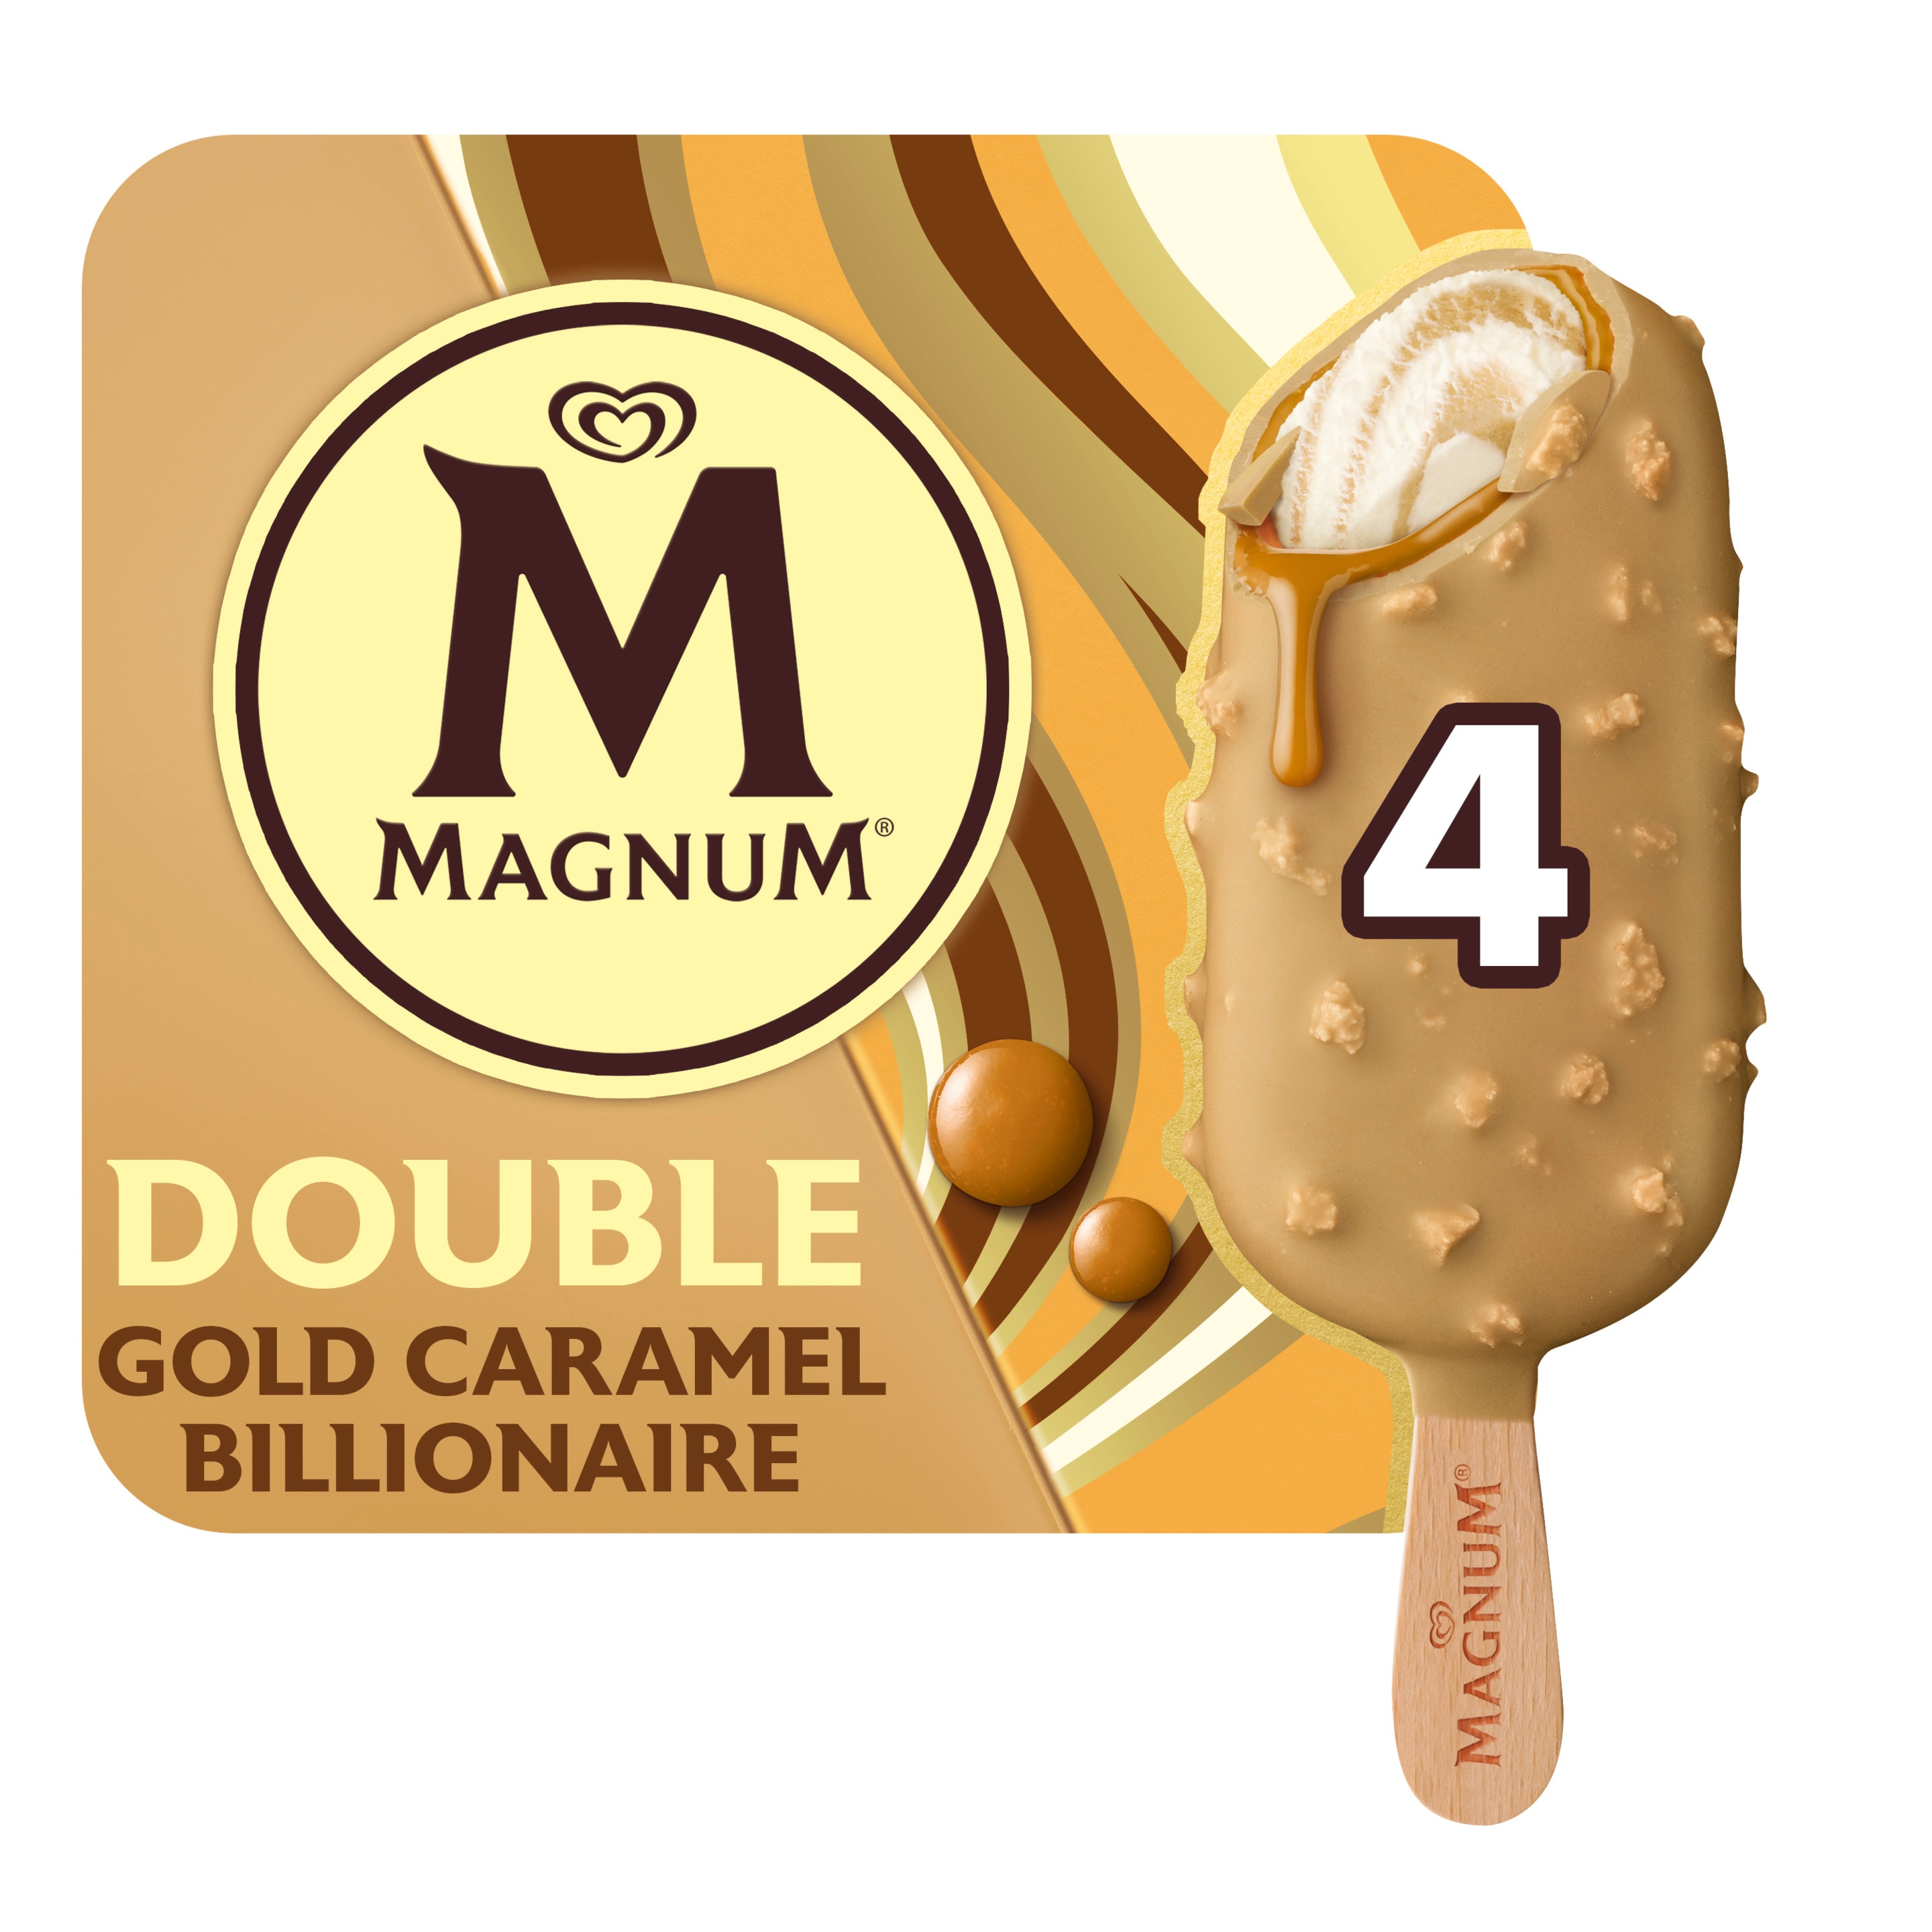 Magnum IJs Double Gold Caramel Billionaire